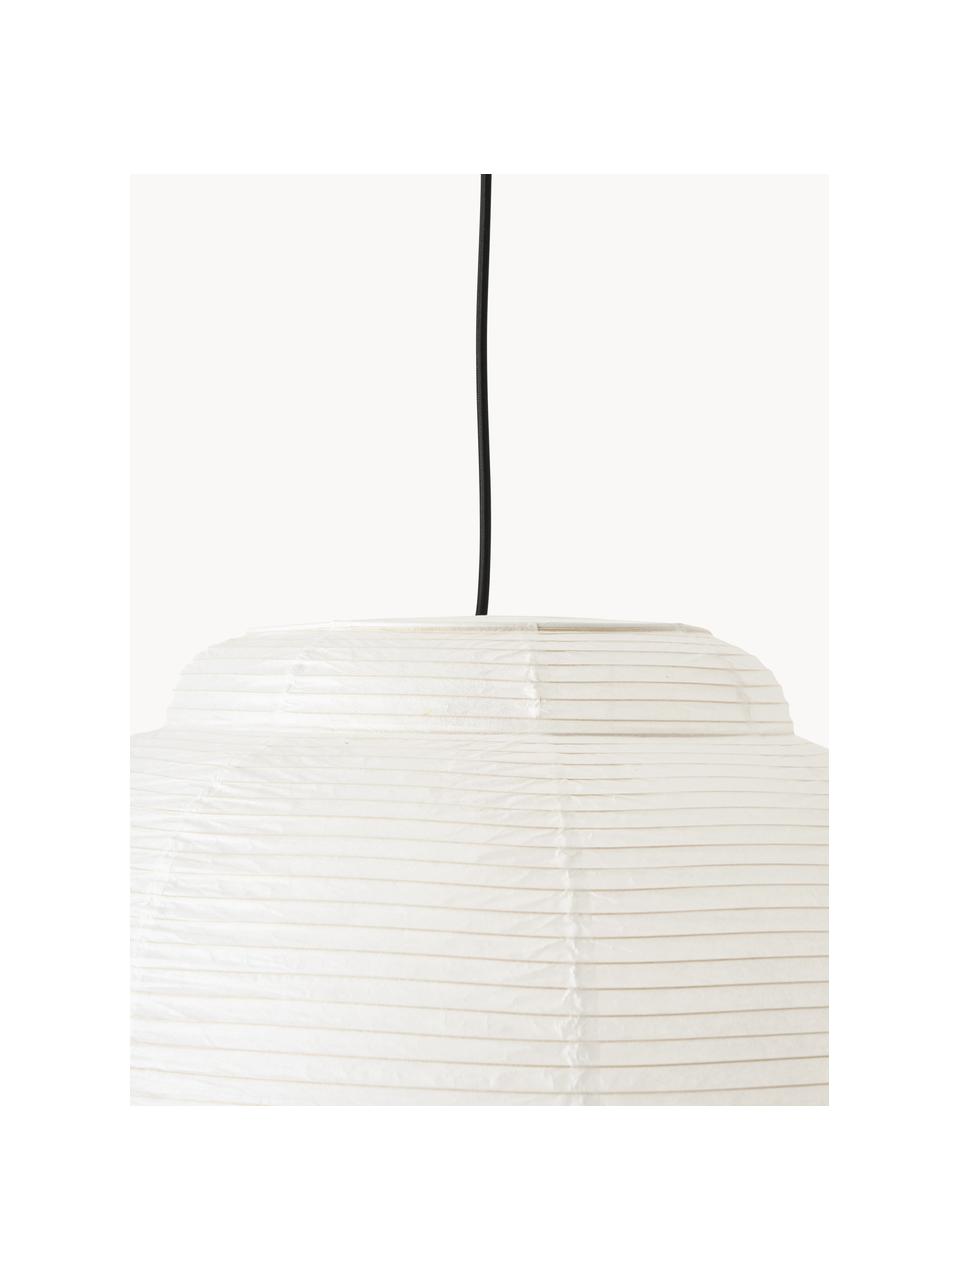 Lámpara de techo de papel de arroz Paper, Pantalla: papel de arroz, Cable: cubierto en tela, Blanco, Ø 52 x Al 34 cm